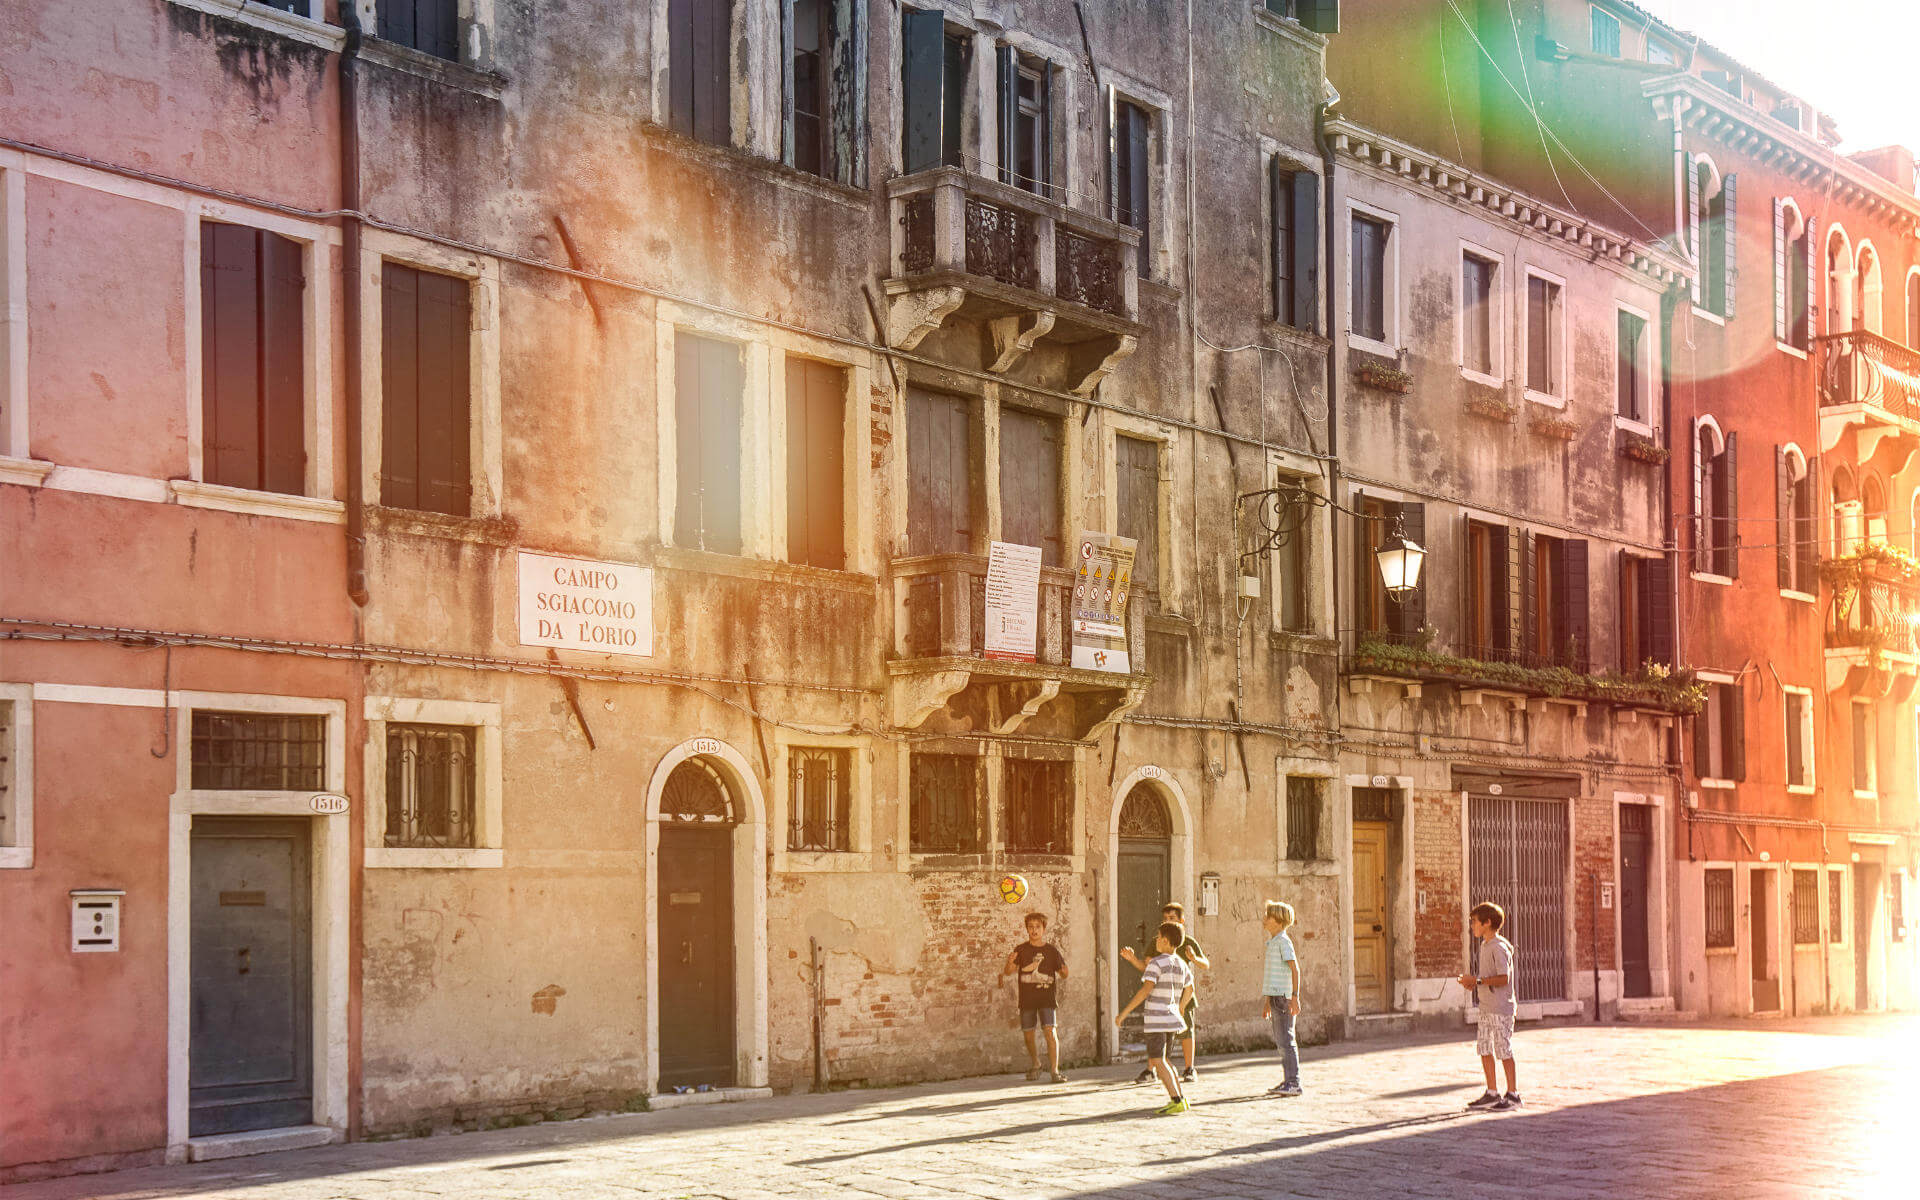 Auf die schönsten und authentischsten Plätze Venedigs wie den Campo San Giacomo trifft man meistens, wenn man sich einfach treiben lässt.